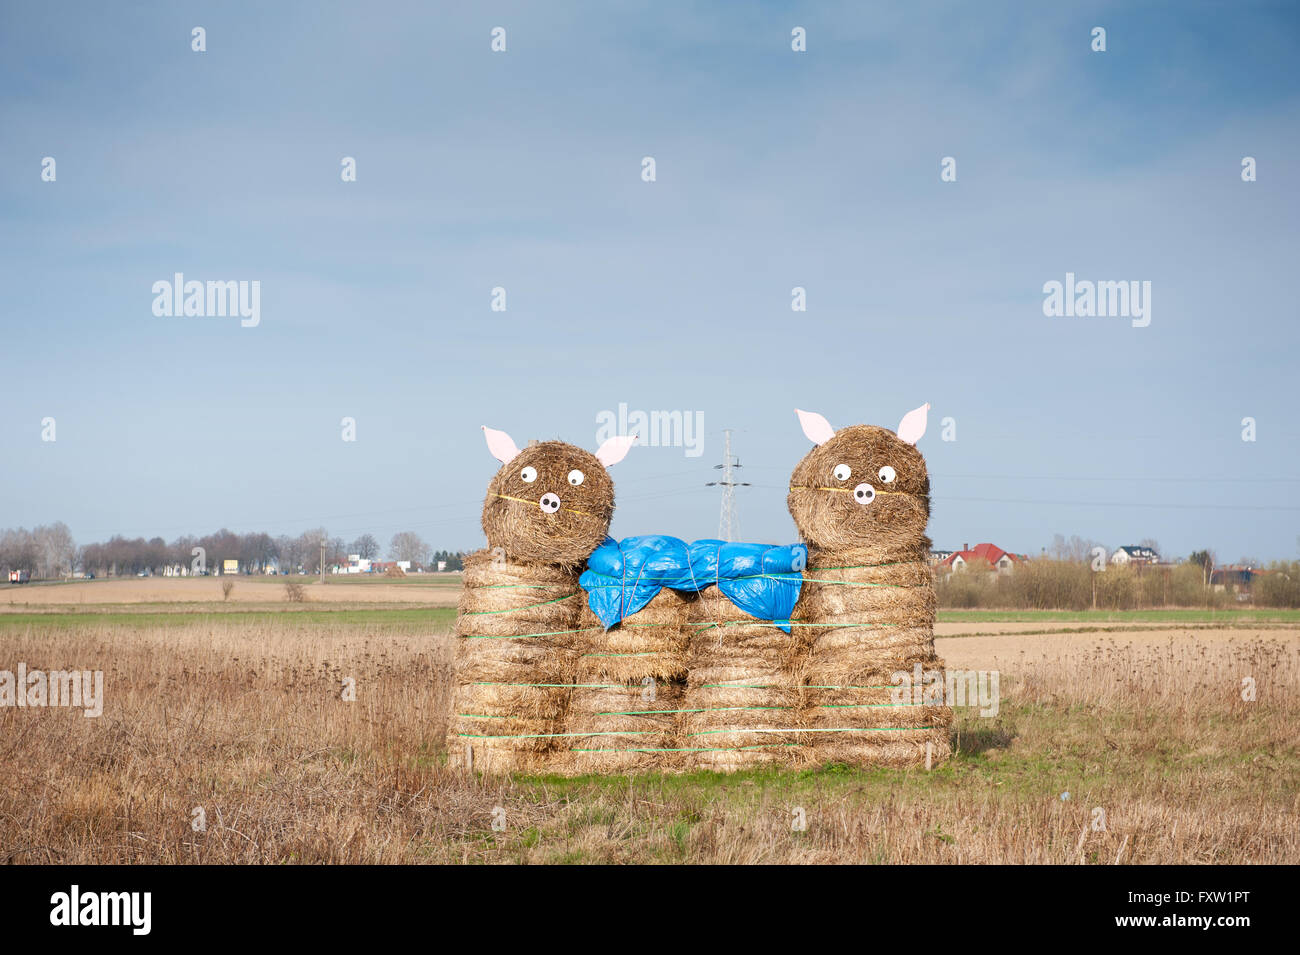 Funny hay bale porcs en Swarzewo près de Poznan en Pologne, l'Europe. Sculptures d'art dans le champ de maïs en labyrinthe, labyrinthe de maïs Banque D'Images